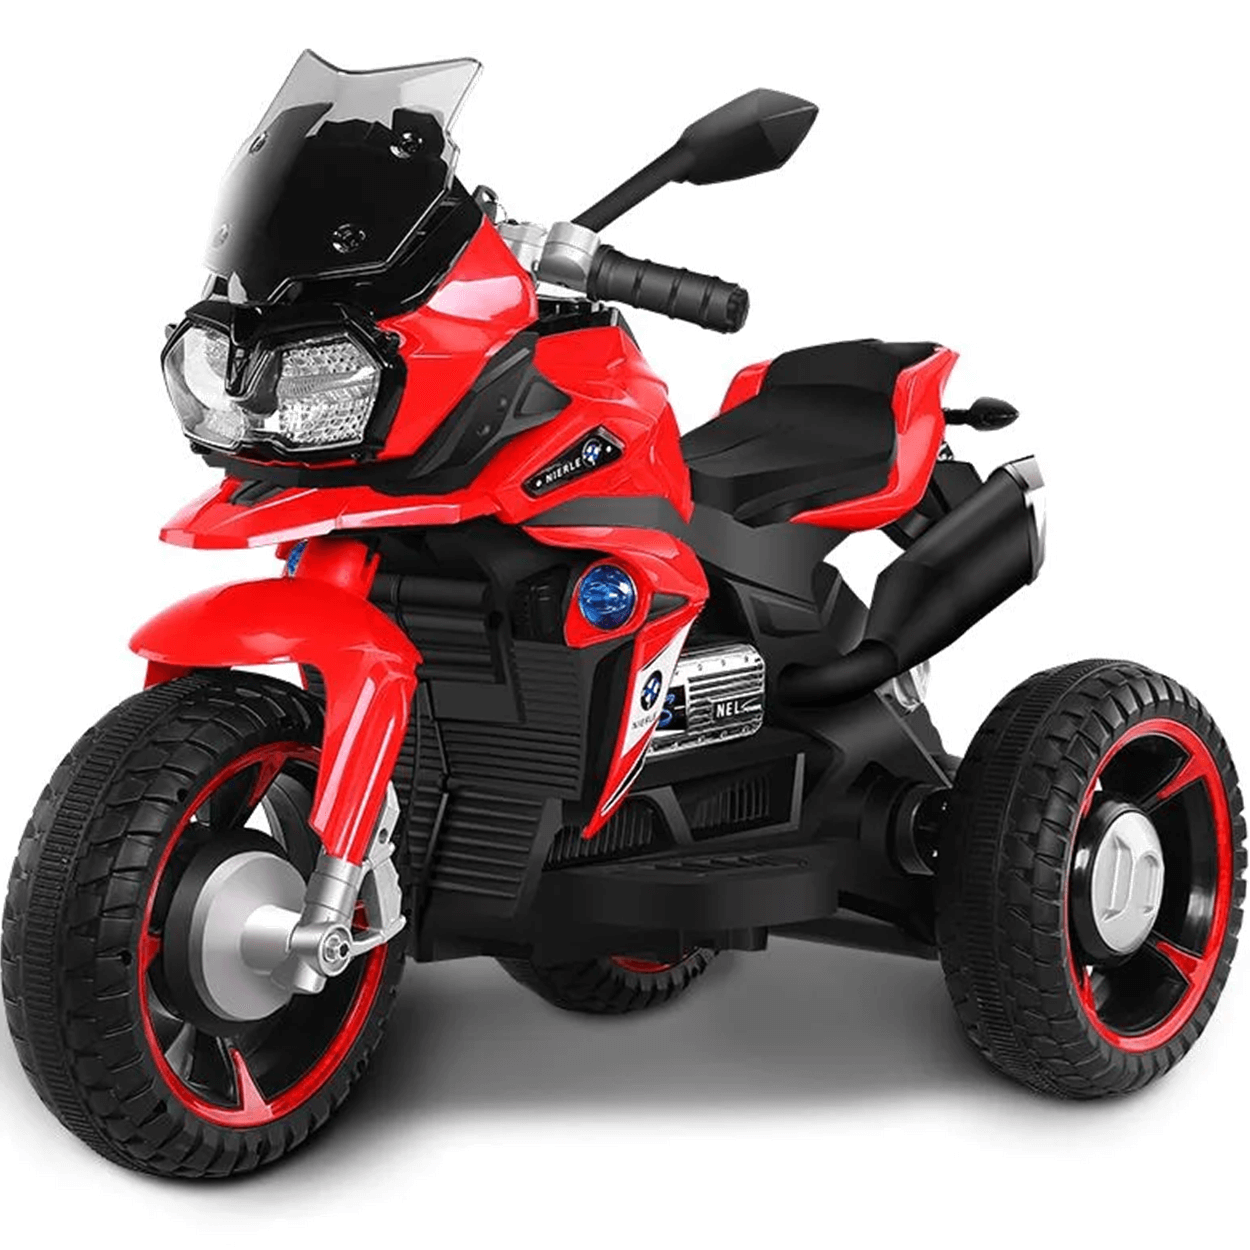 Moto Triciclo Eletrico Shiny Toys Nierle R1600 Gs 6v Vermelha - 1